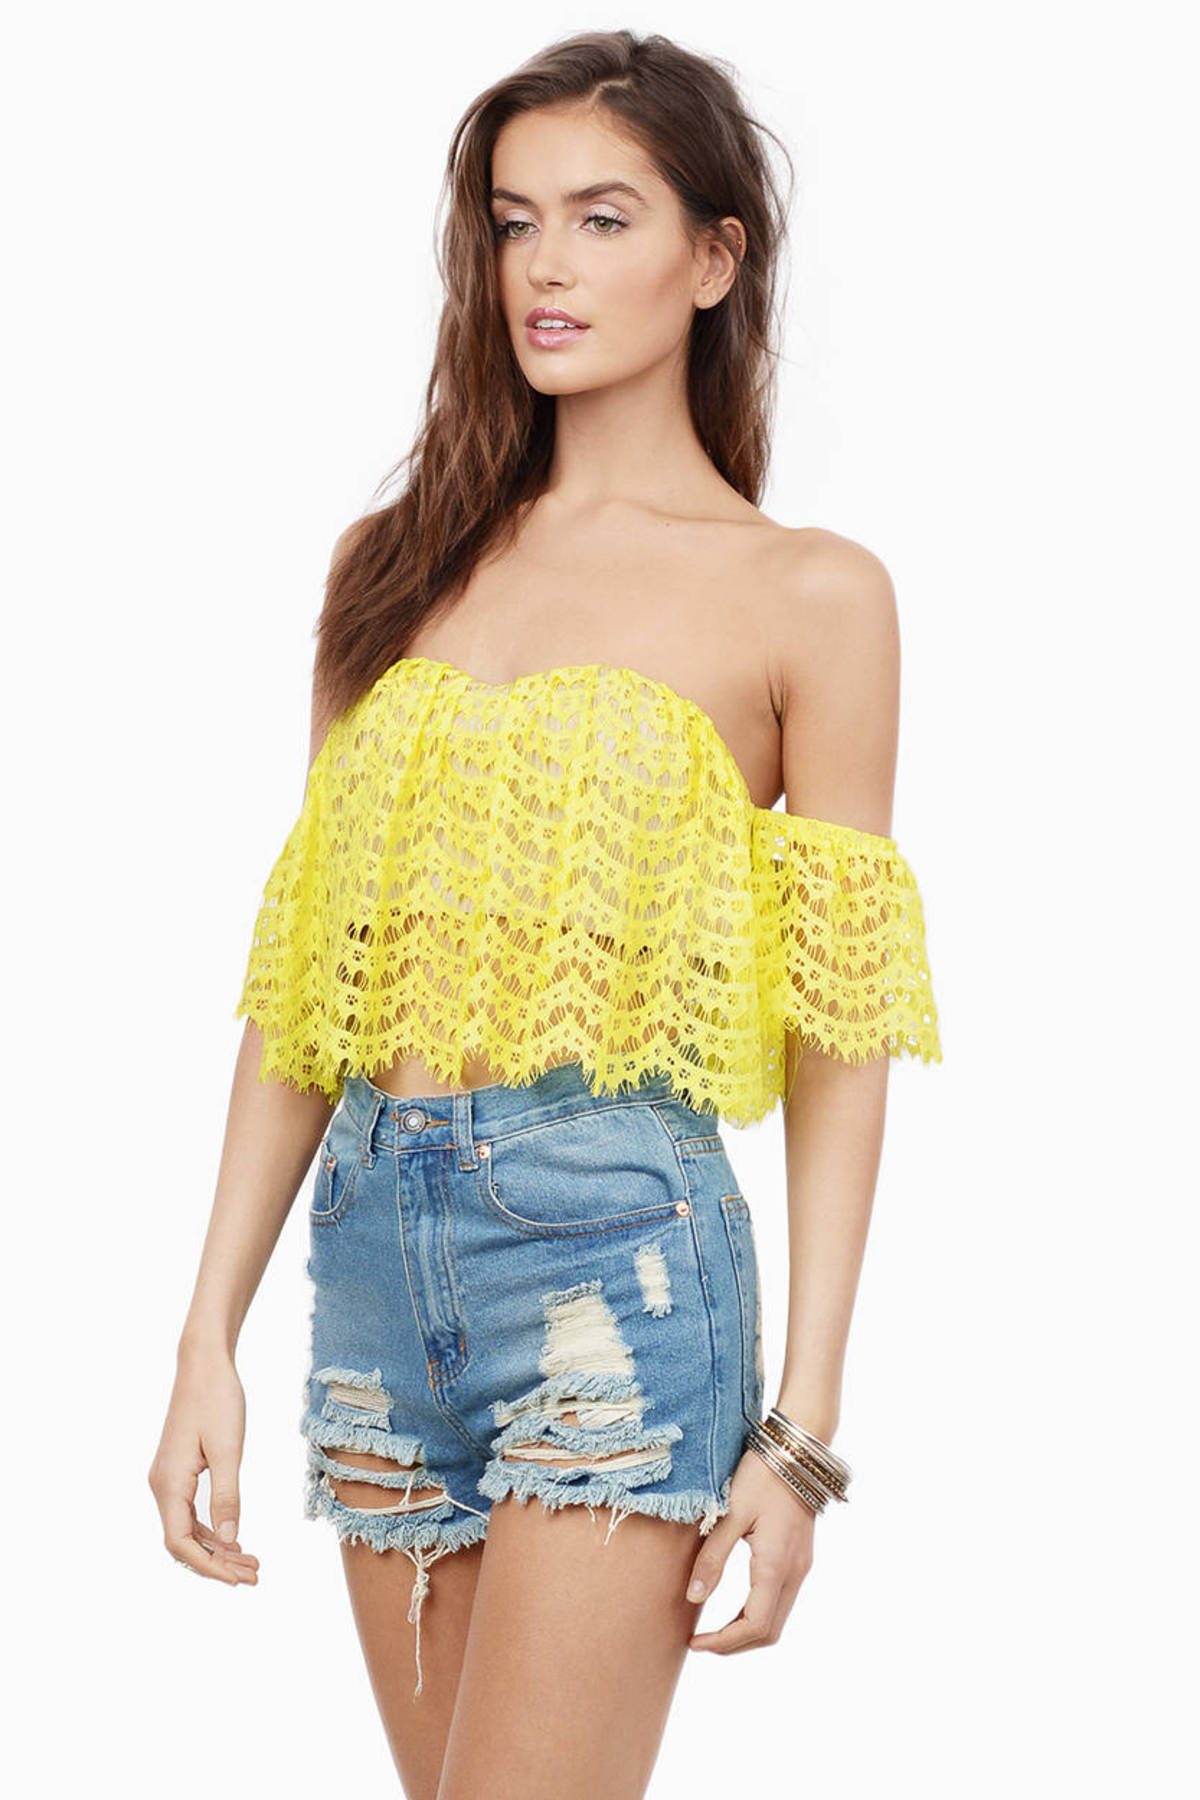 Yellow Crop Top - Crochet Crop Top - Off Shoulder Crop Top - Yellow Top ...